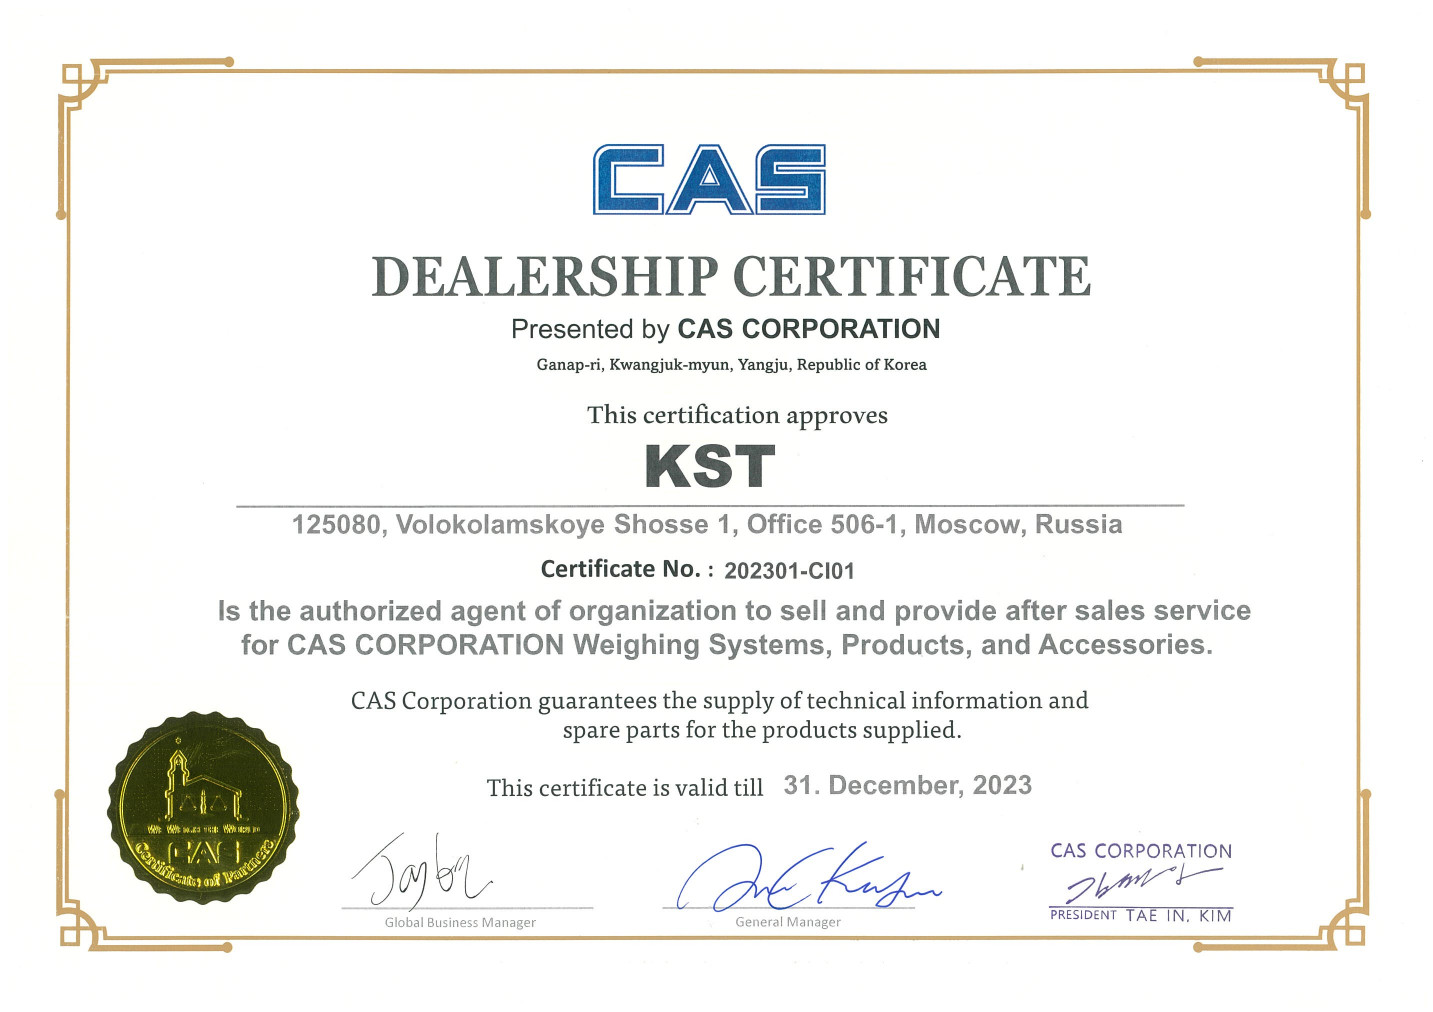 2023 Dealership Sertificate CAS Corporation